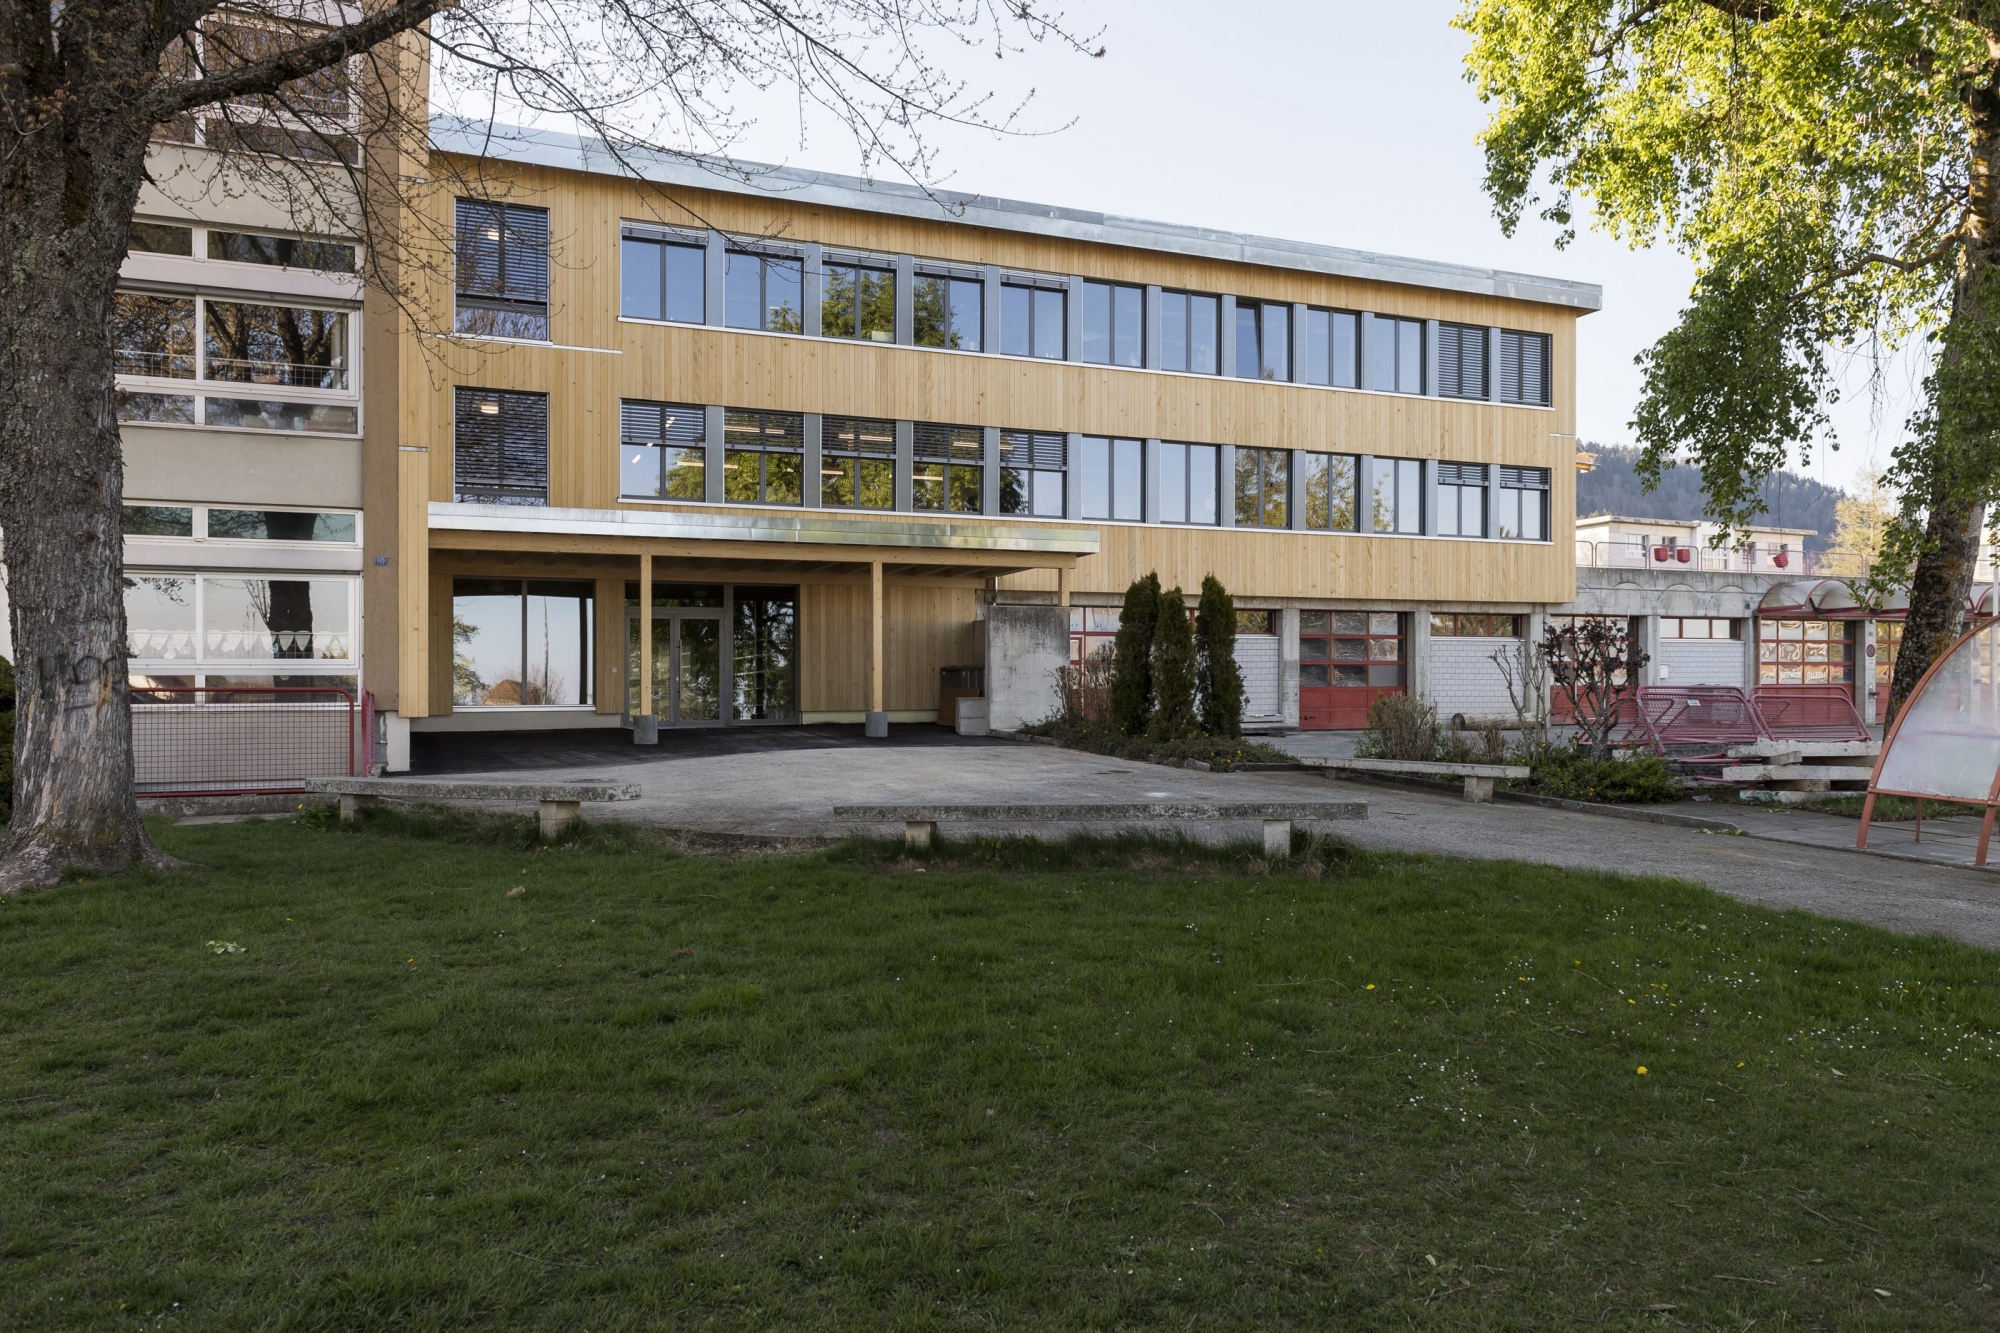 Le collège du Lynx – agrandi en 2016 avec l'ajout d’un nouvelle structure scolaire – fait partie des constructions qui n’auraient pas dû voir le jour aux Geneveys-sur-Coffrane.